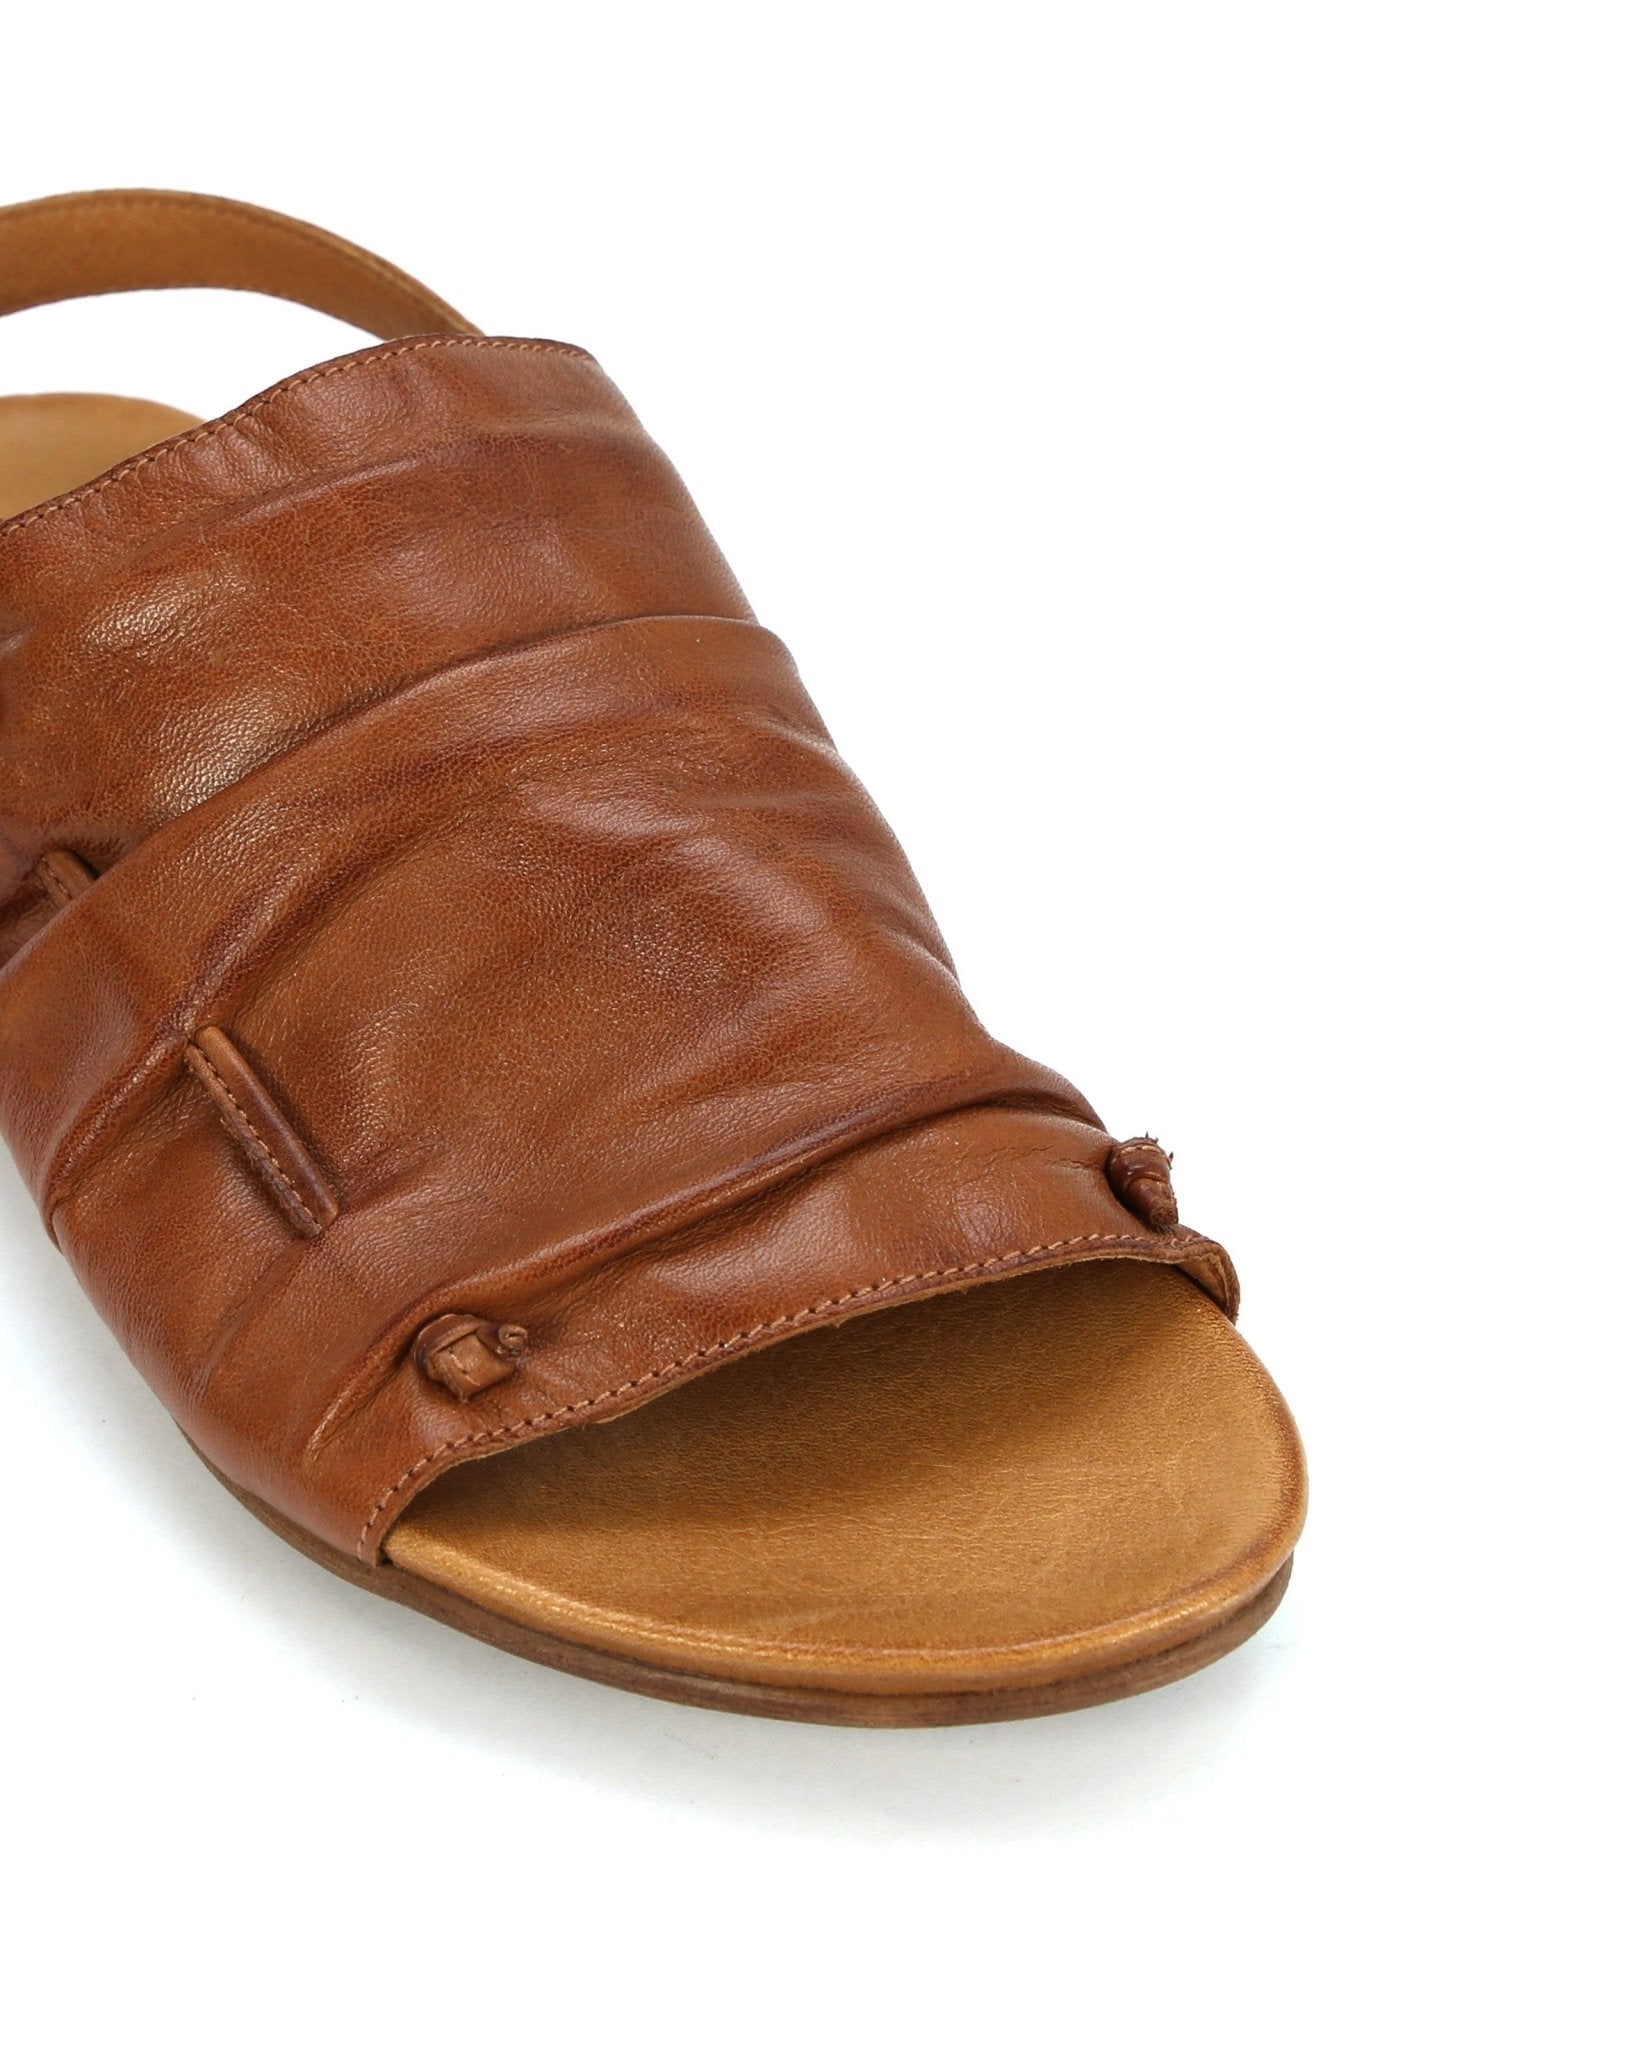 Lazer Leather Sling Back Sandals - EOS Footwear - Sling Back Sandals